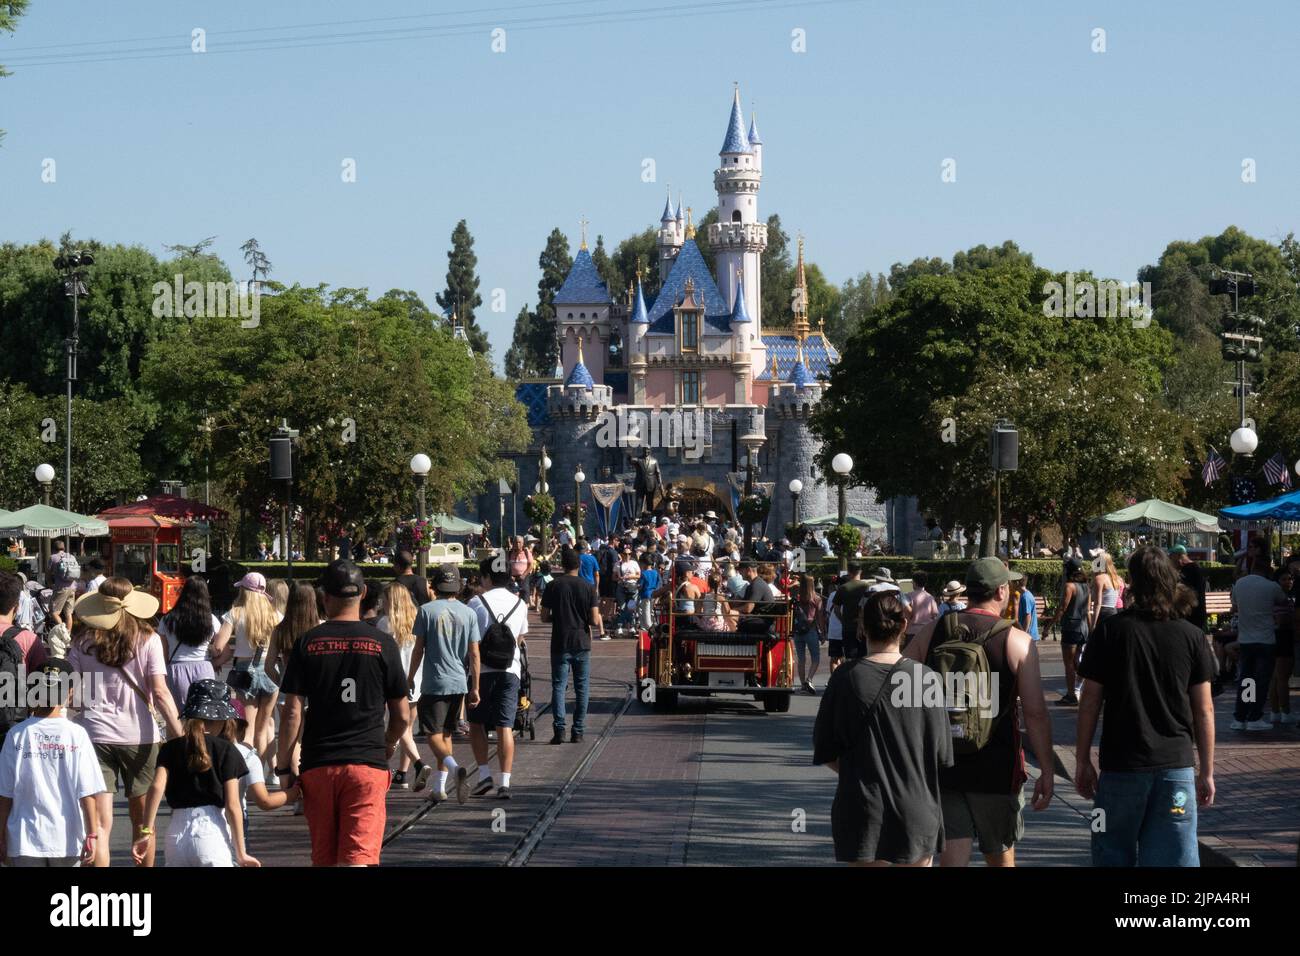 Anaheim, Kalifornien, USA. 16. August 2022. Sleeping Beauty Castle in Disneyland am 15. August 2022, als das Disneyland Resort von Walt Disney Co. In Kalifornien die jährlichen Passverkäufe wieder aufsetzt, mit zusätzlichen Vergünstigungen für Kunden, die bereit sind, die hohen Gebühren zu bezahlen. Bestehende Passinhaber erhalten am Donnerstag die Möglichkeit, den neuen Inspire-Pass zu Preisen bis zu $1.599 zu verlängern. Es beinhaltet kostenloses Parken und einen Rabatt von 20 % auf einige Waren in den Parks, aber kommt mit ein paar Tagen um die Feiertage im Dezember, wenn der Pass nicht verwendet werden kann. Es ersetzt einen Pass namens Dream Key, der $1.399 kostet Stockfoto